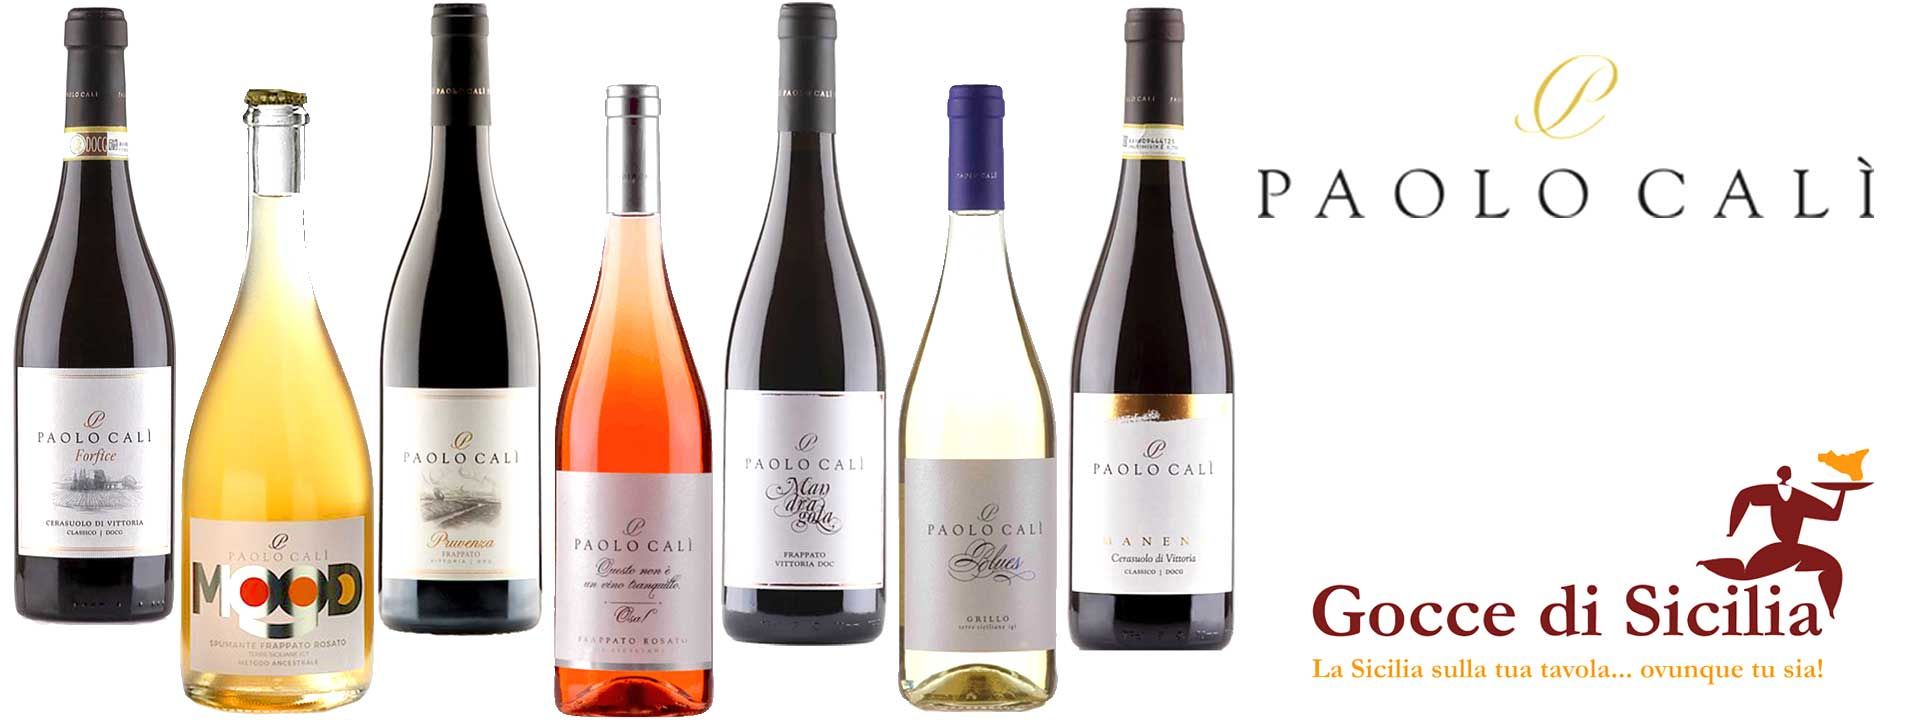 L'azienda vitivinicola di Paolo Calì, produce vini ambasciatori del territorio e che raccontano la storia di chi li ha prodotti